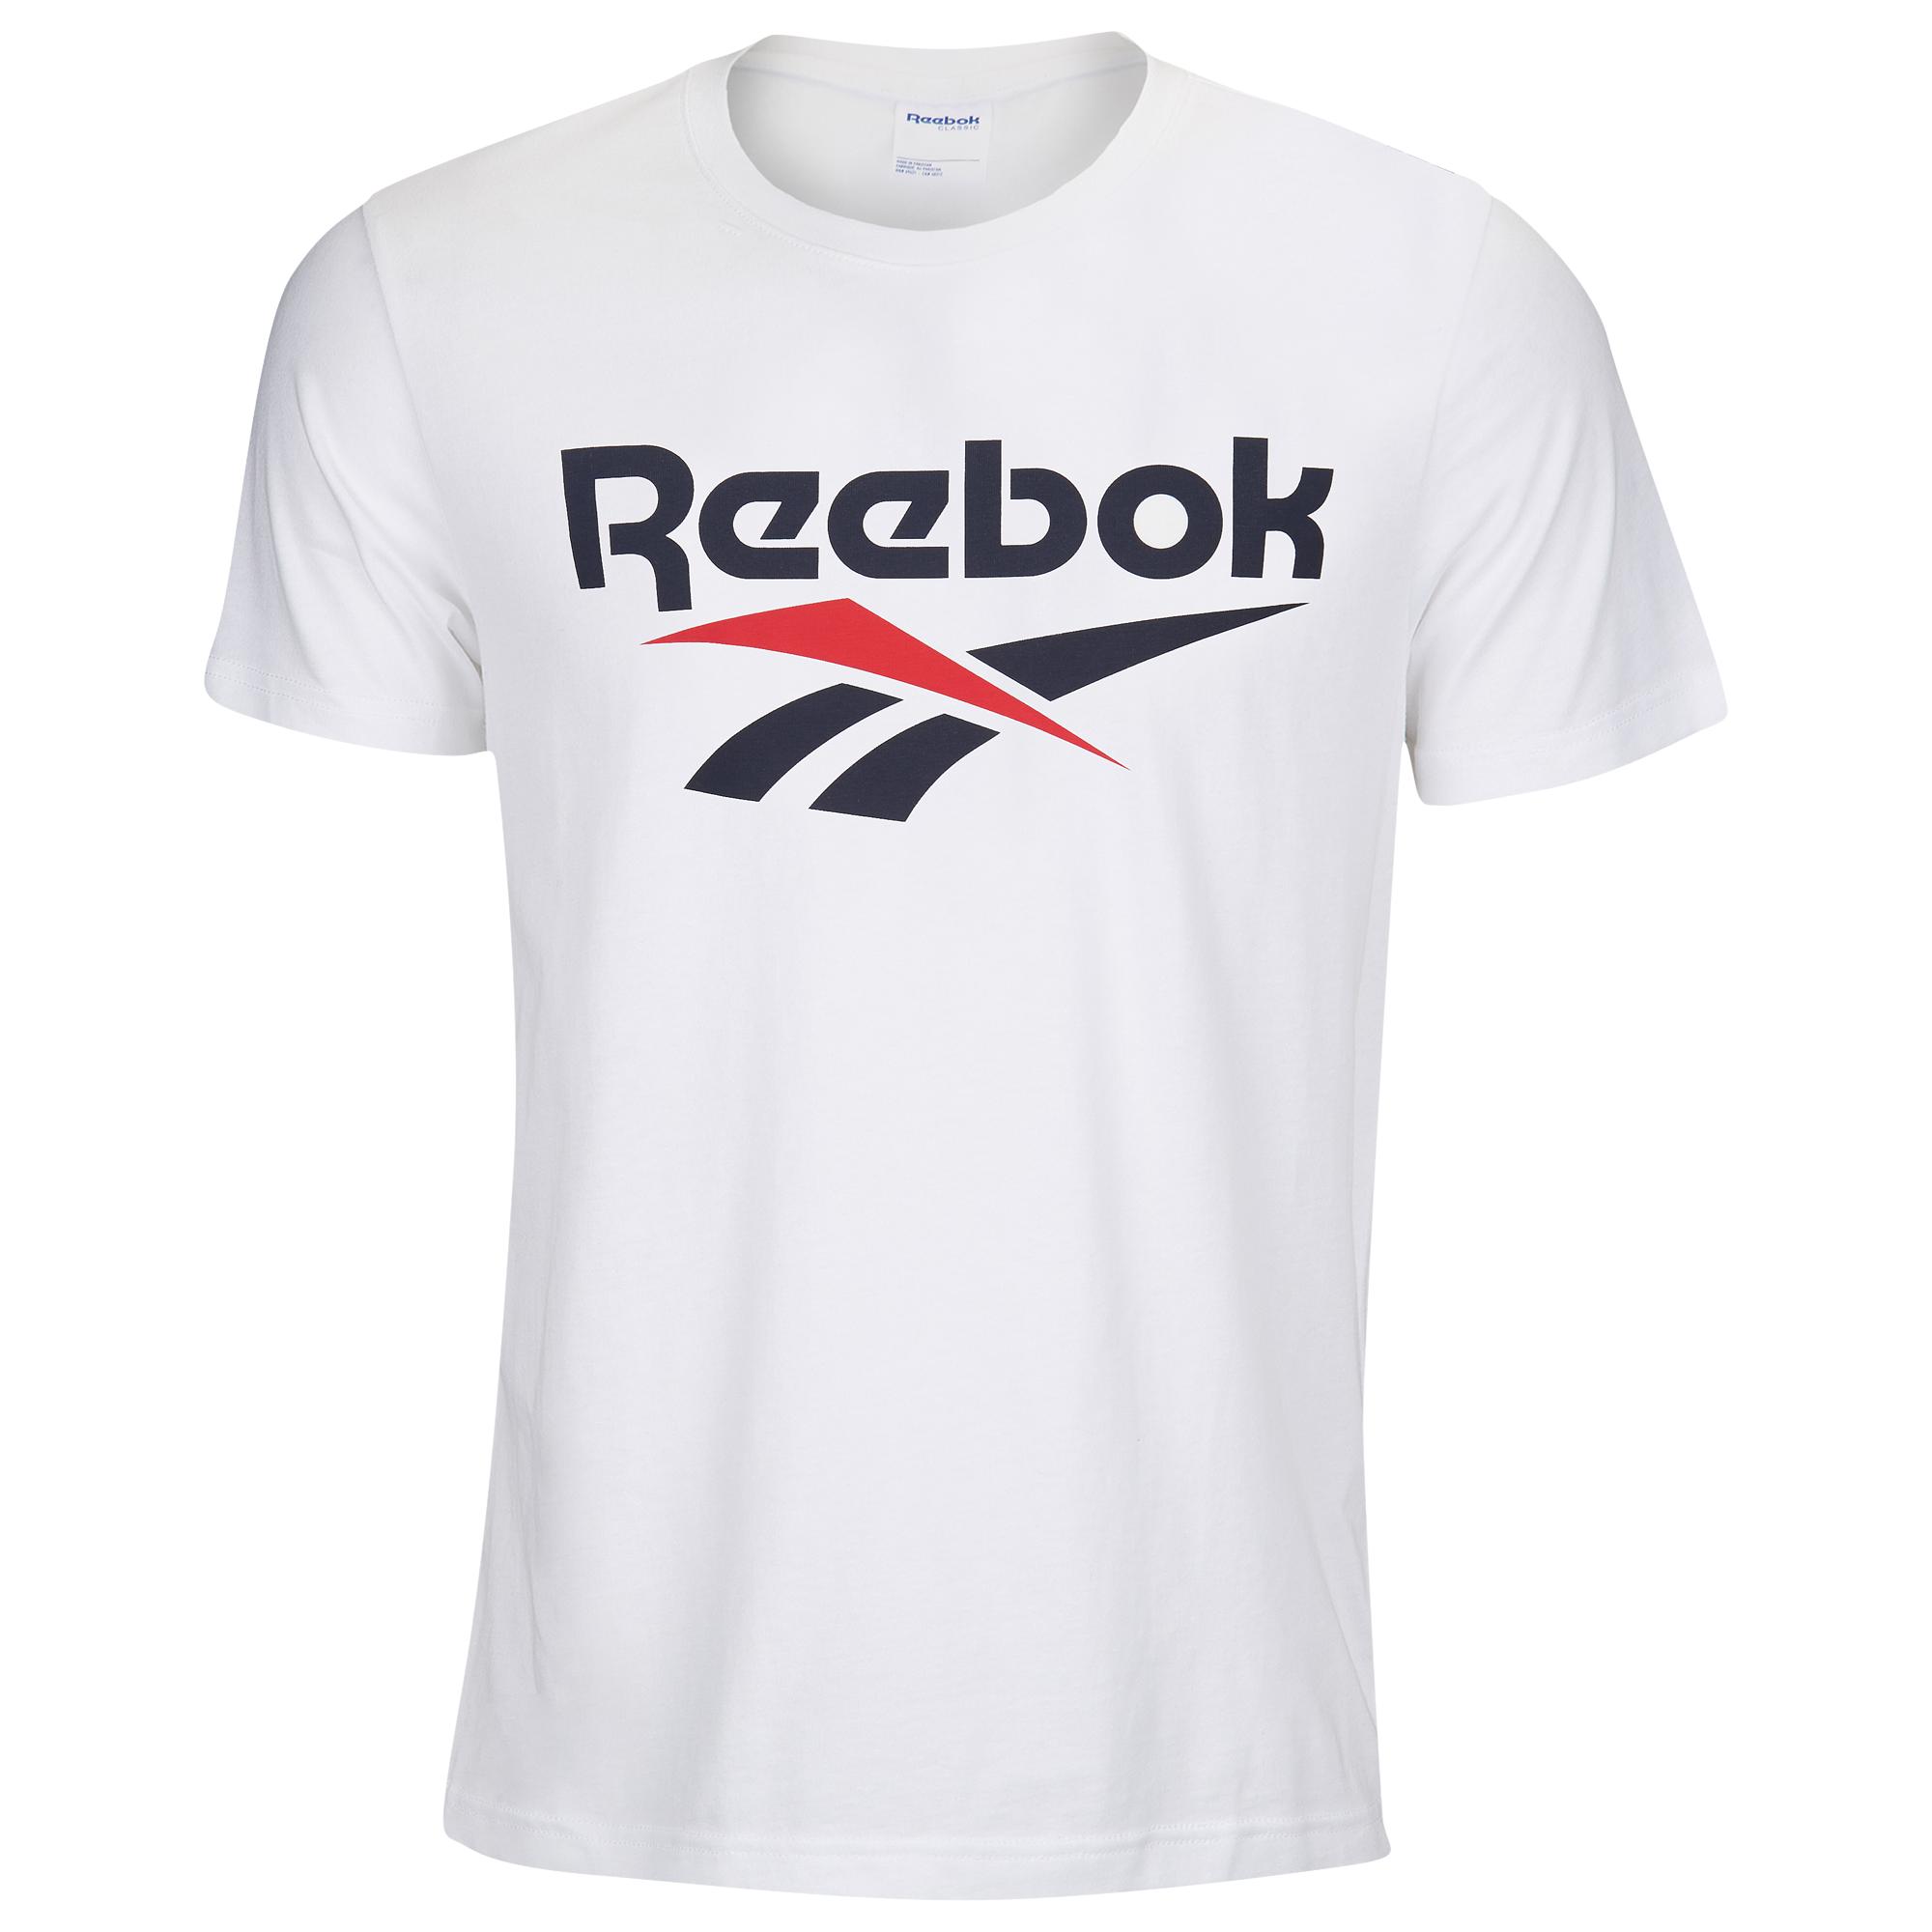 Reebok Short Sleeve Logo T-shirt in White for Men - Lyst